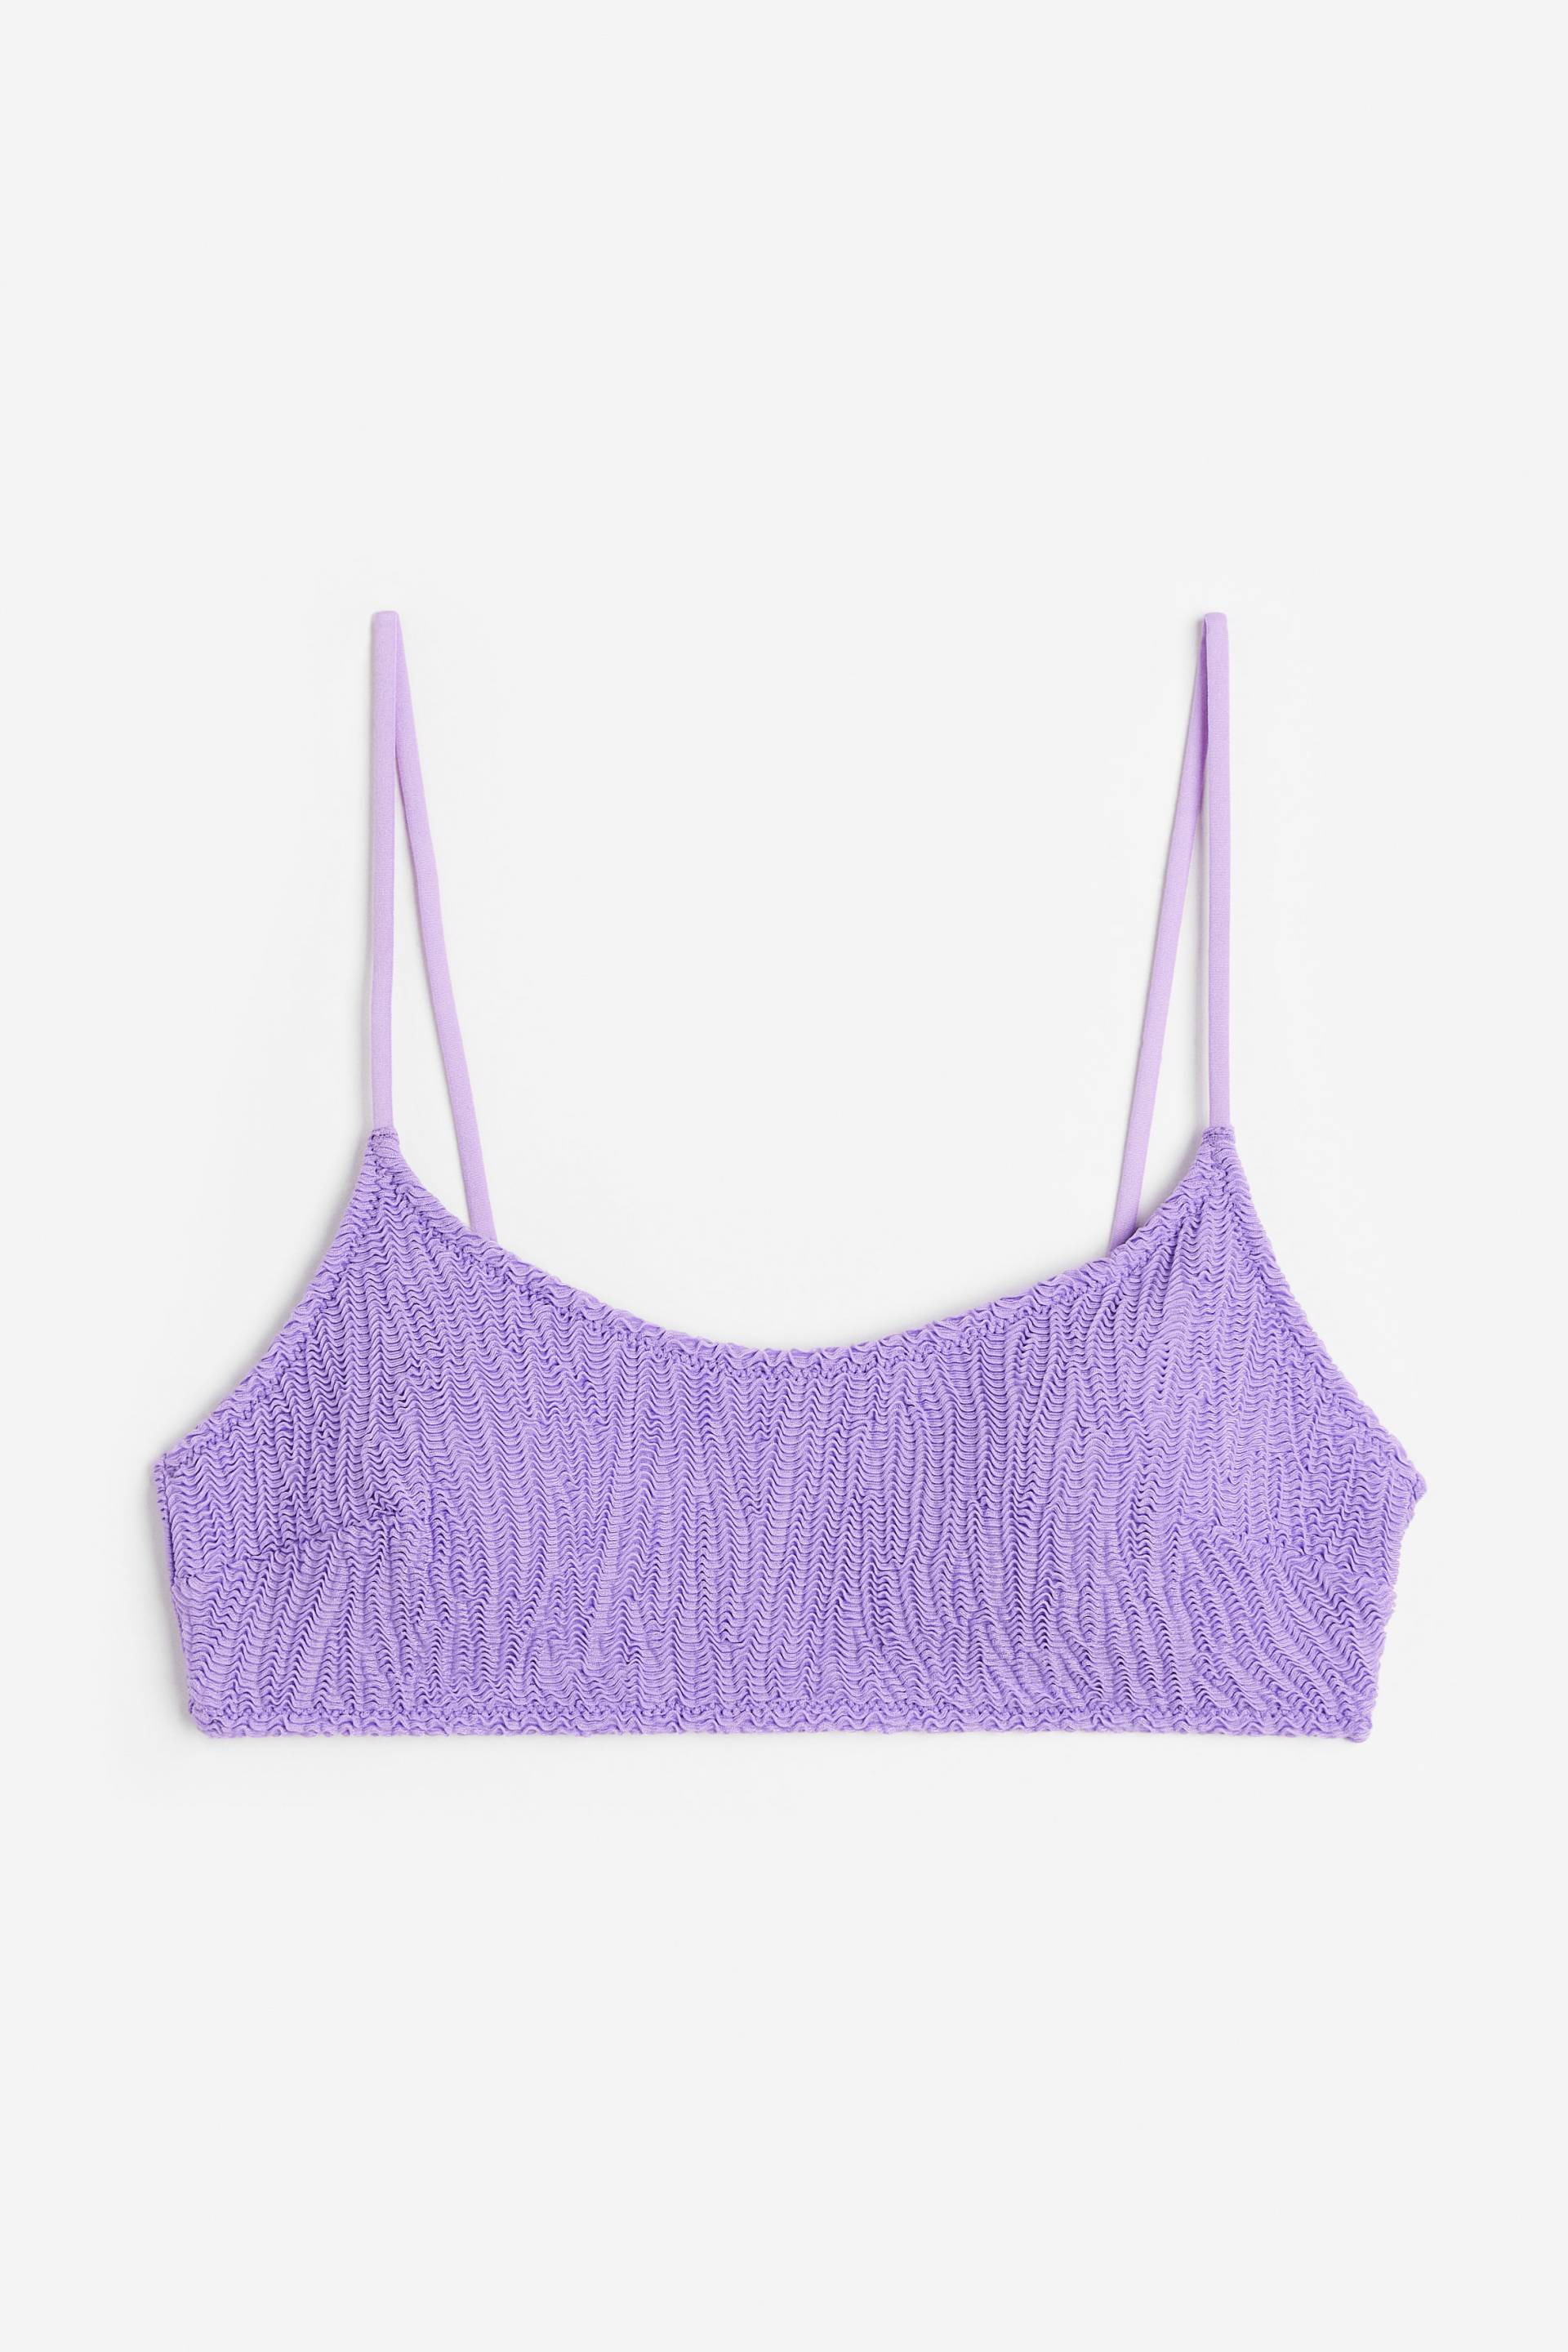 H&M Wattiertes Bikinitop Lila, Bikini-Oberteil in Größe 32. Farbe: Purple von H&M